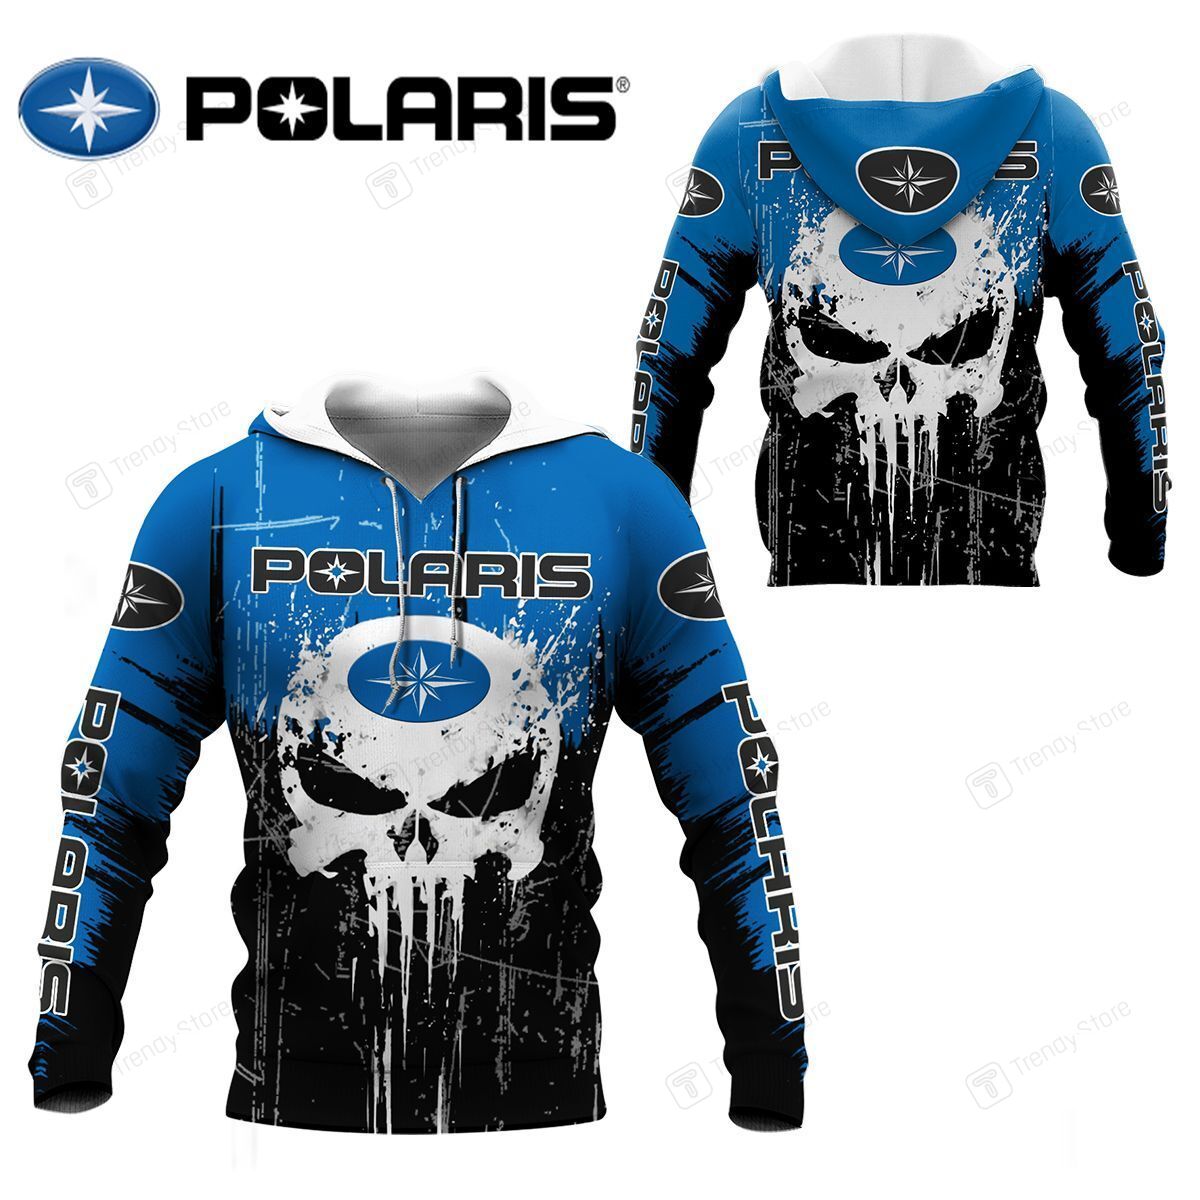 3D All Over Printed Polaris Shirts Ver 6 (Blue) – Slamandgo